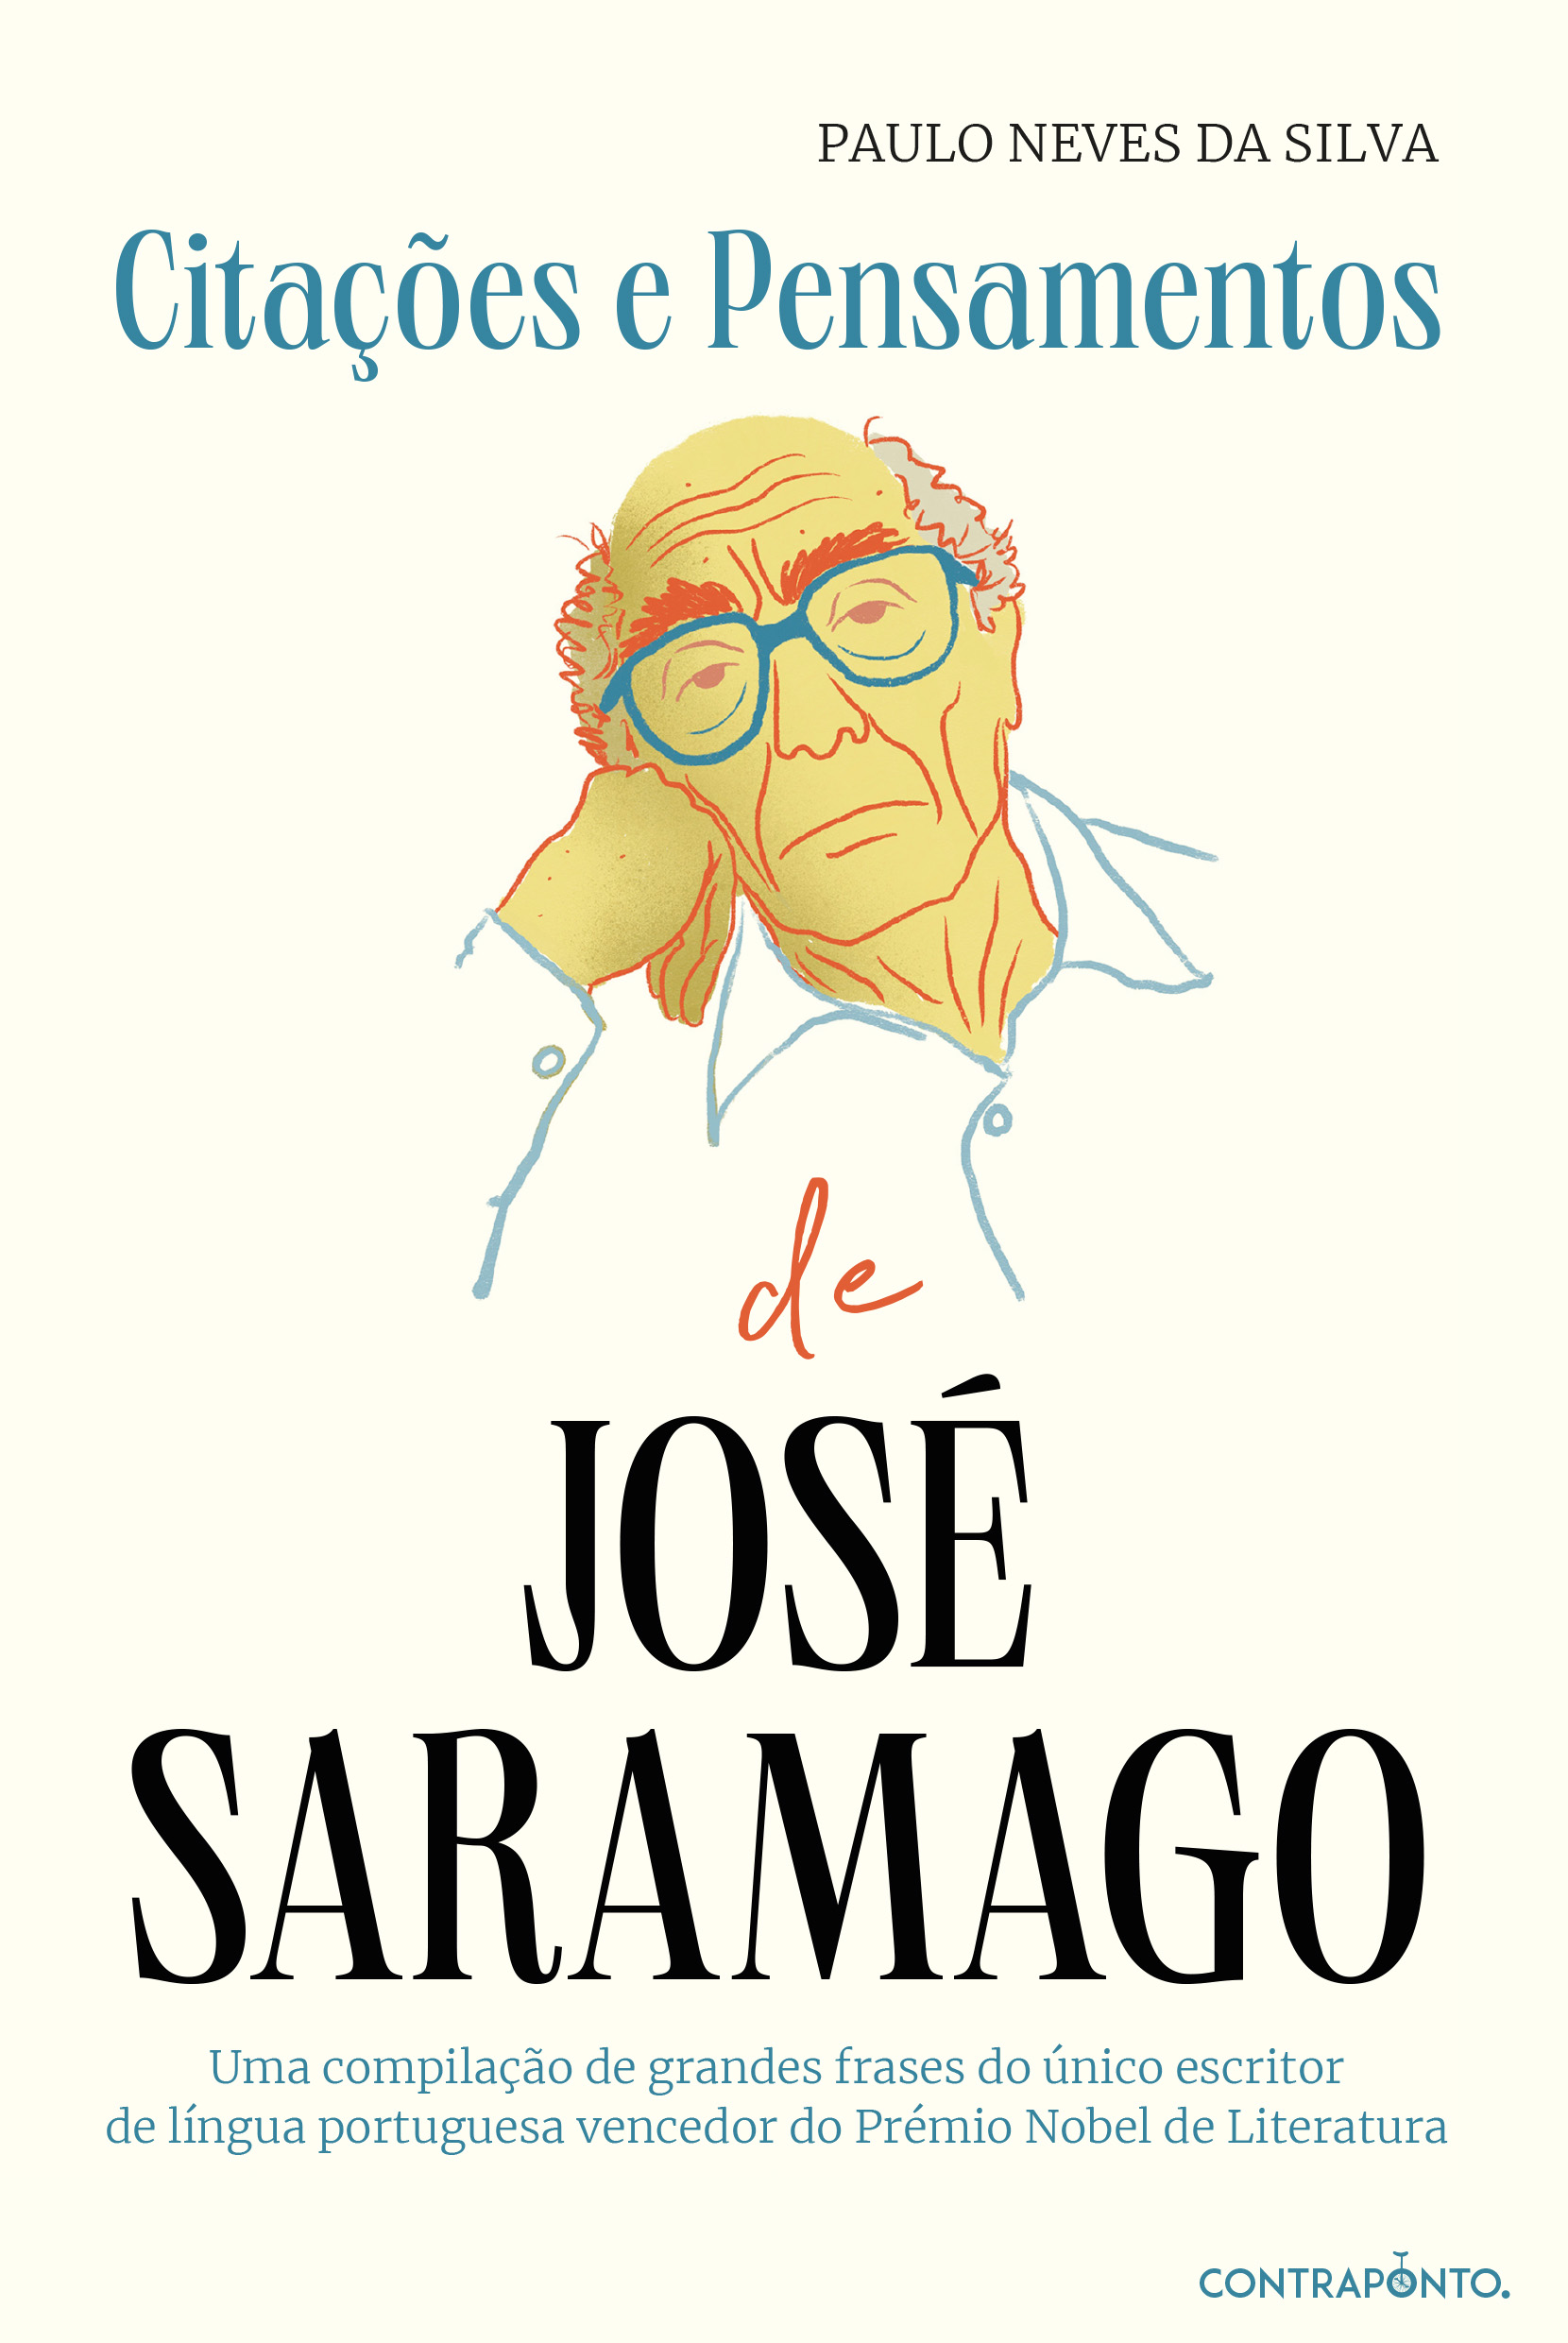 Citações e Pensamentos de José Saramago